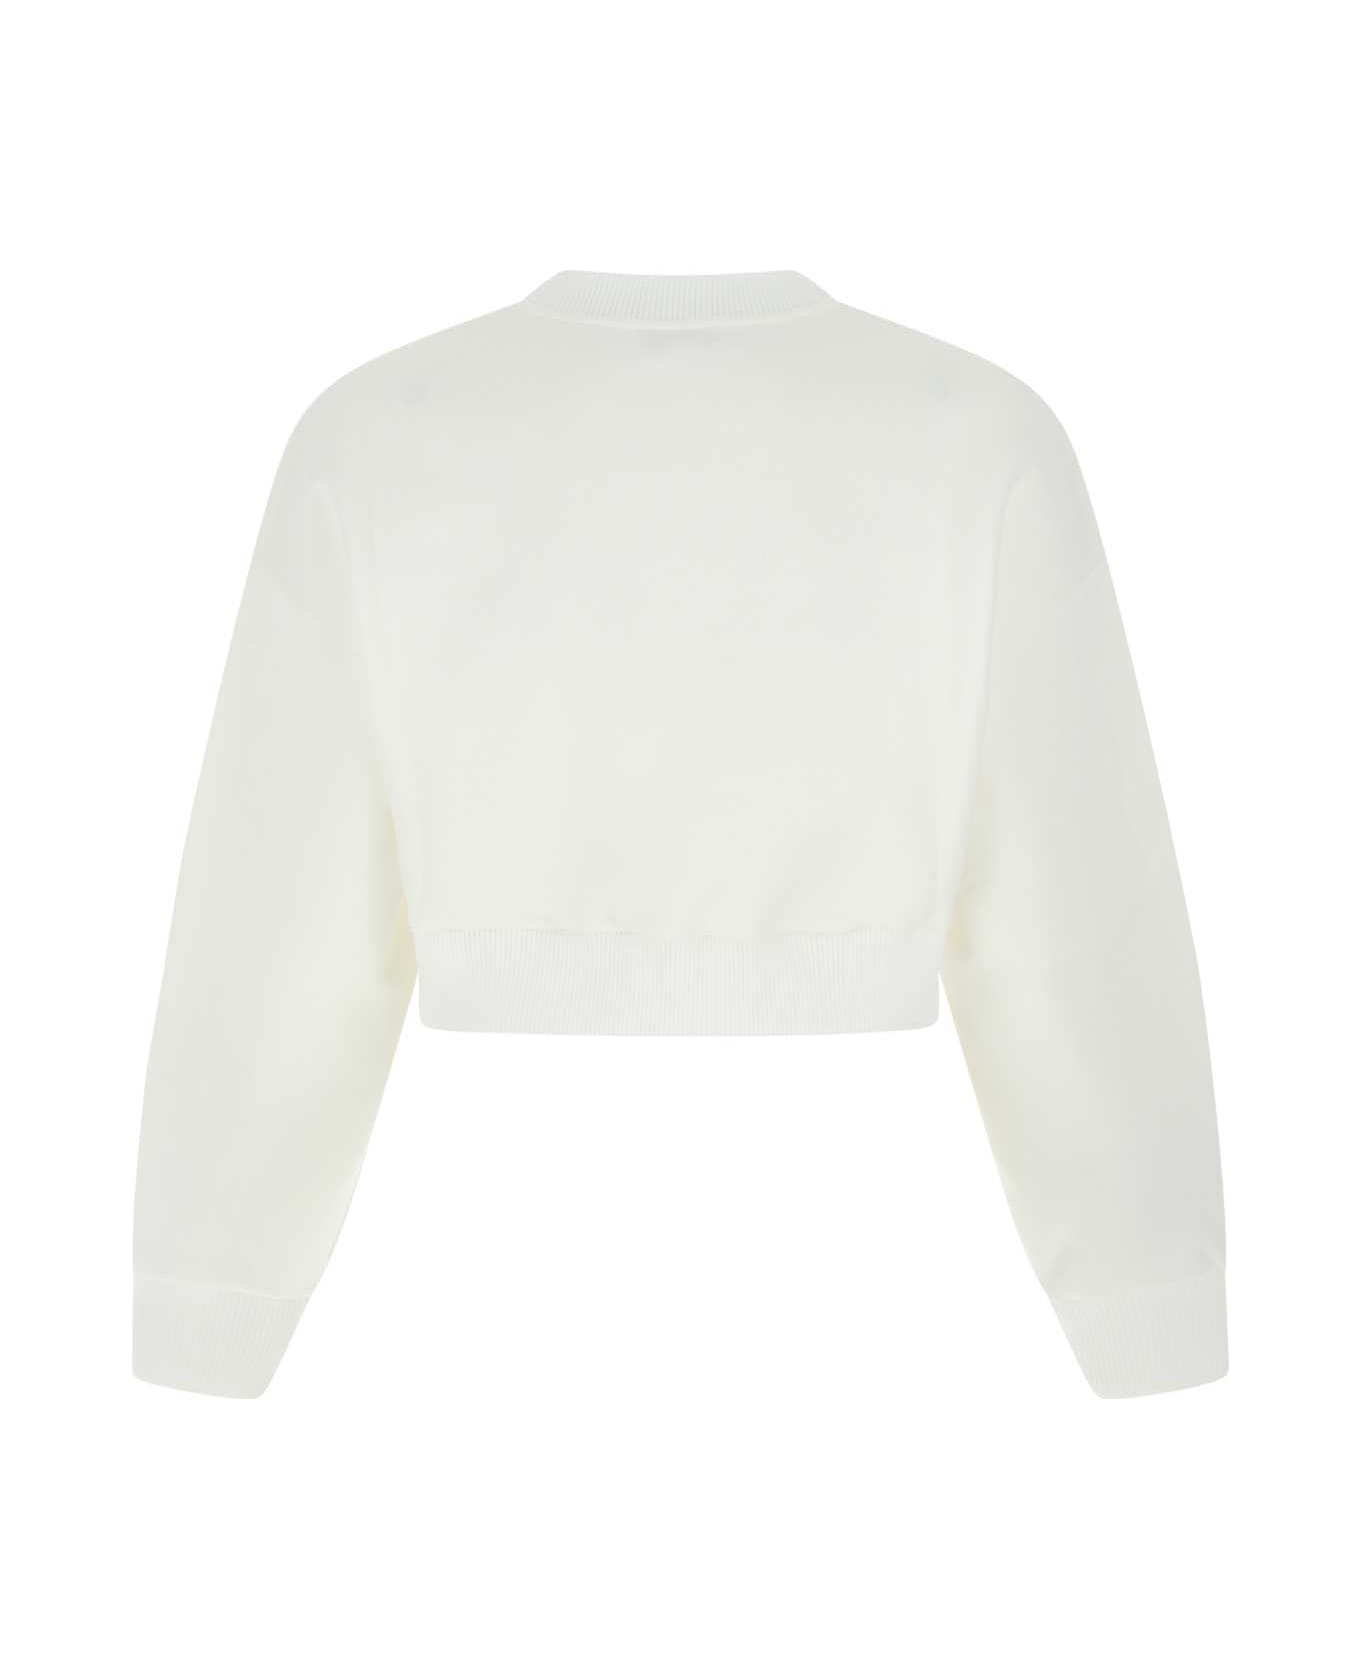 Alexander McQueen White Cotton Blend Sweatshirt - 9000